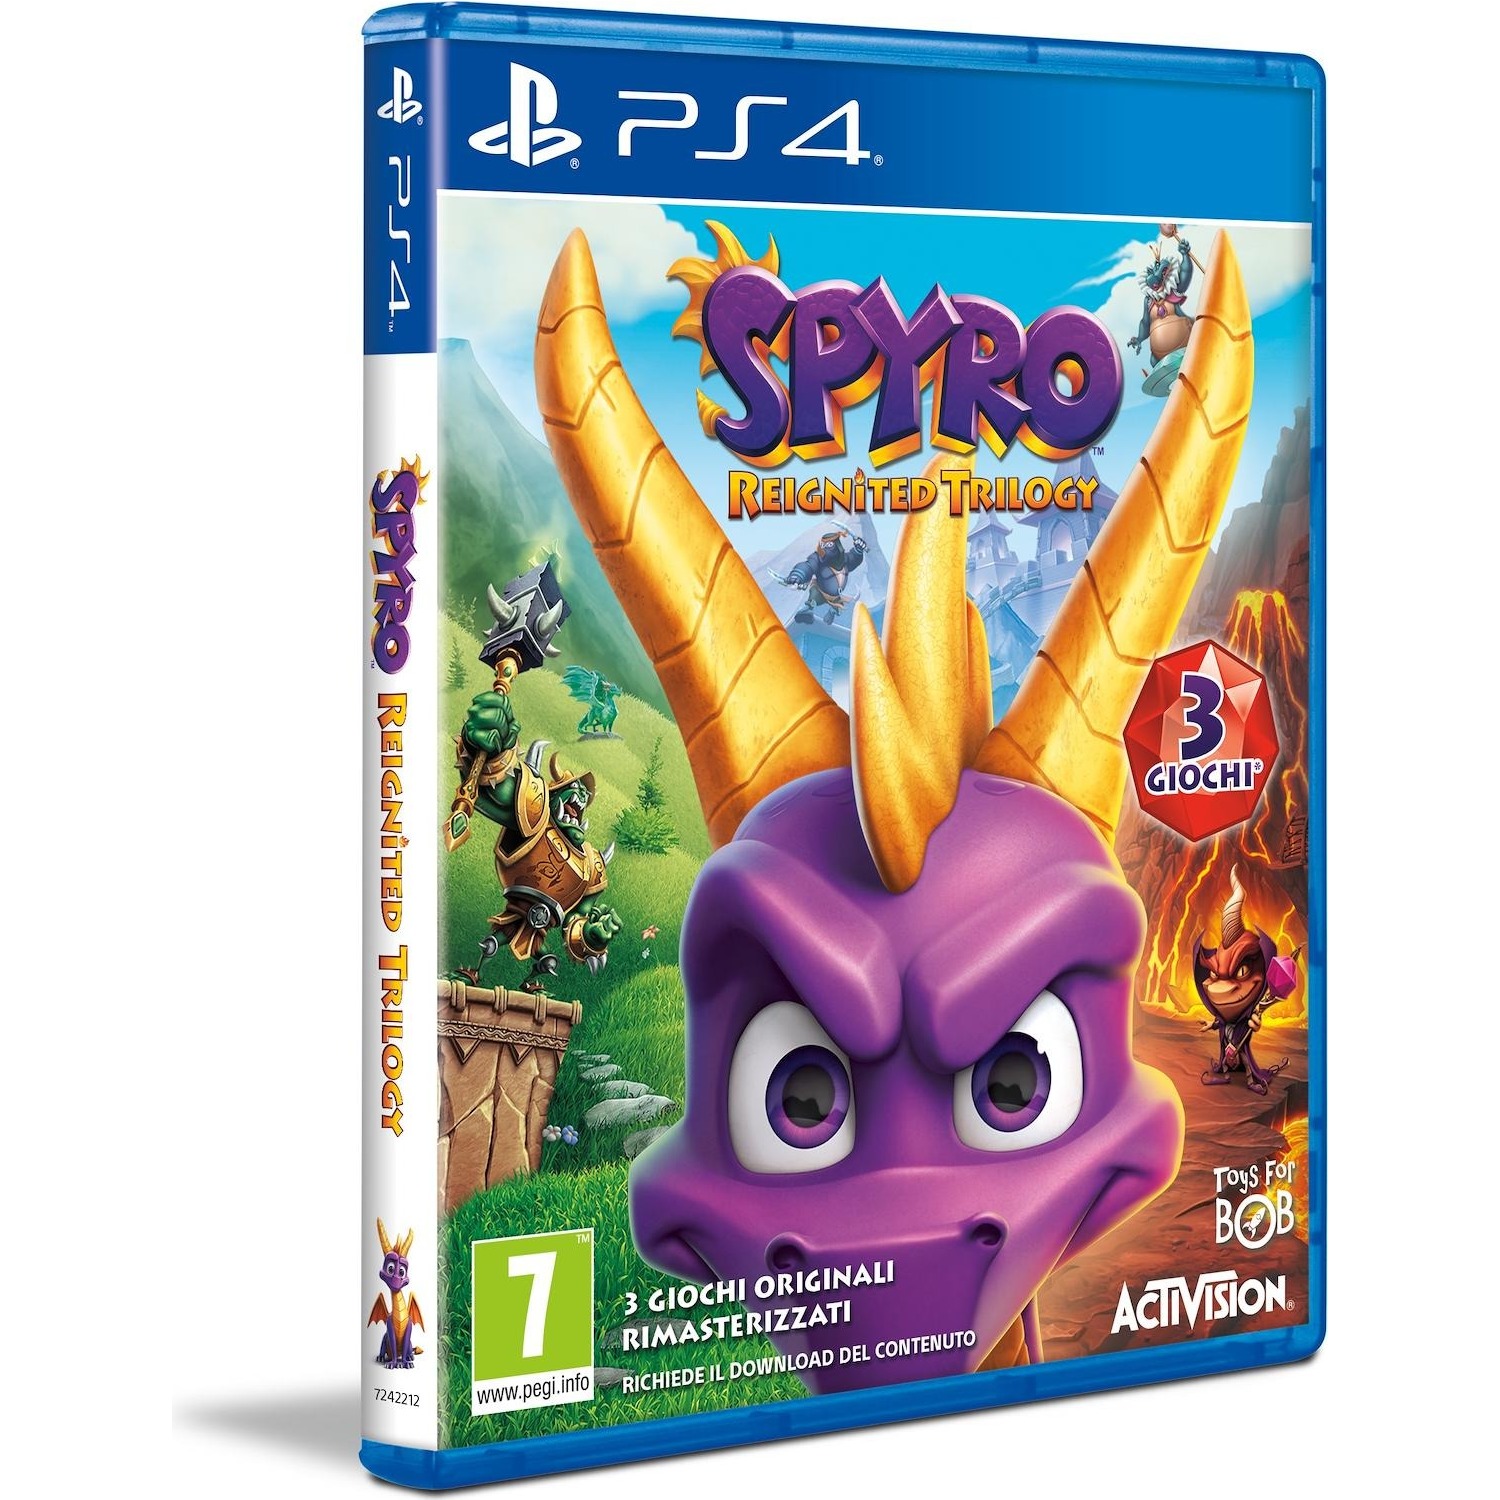 Immagine per Gioco PS4 Spyro Trilogy Reignited da DIMOStore